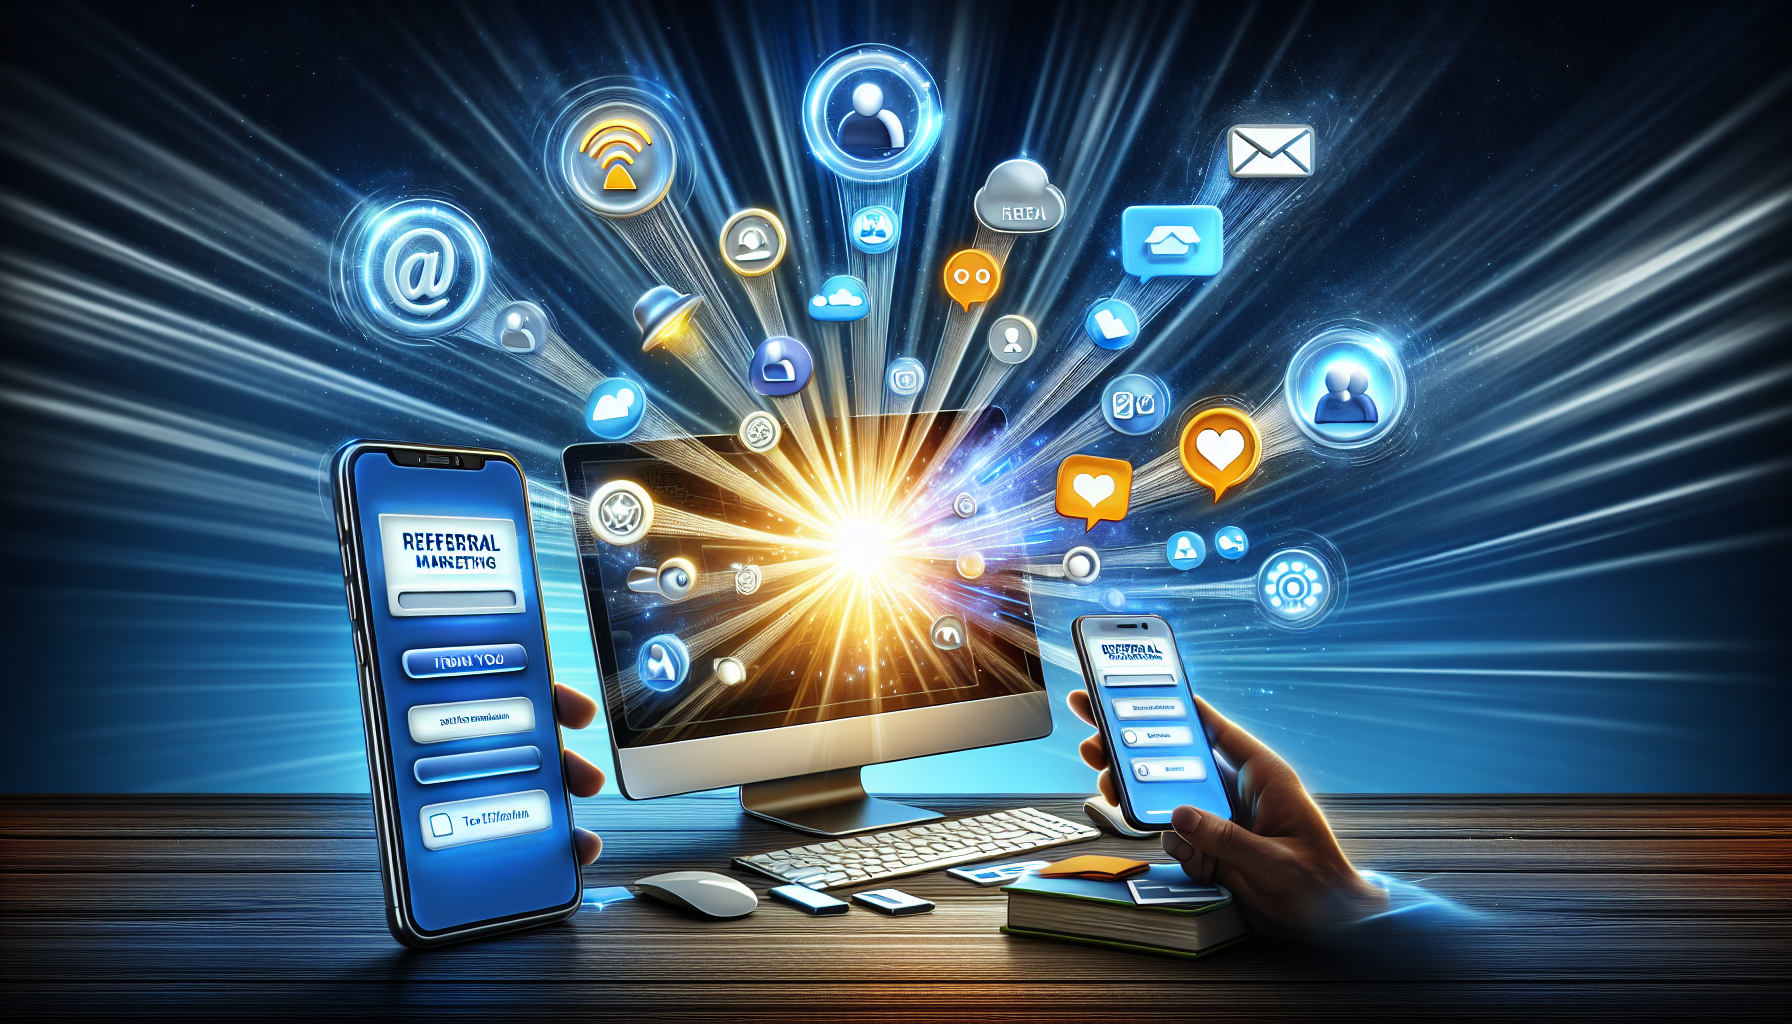 Darstellung von Tools und Plattformen für Empfehlungsmarketing, einschließlich Softwarelösungen, Integration sozialer Medien und E-Mail-Marketing